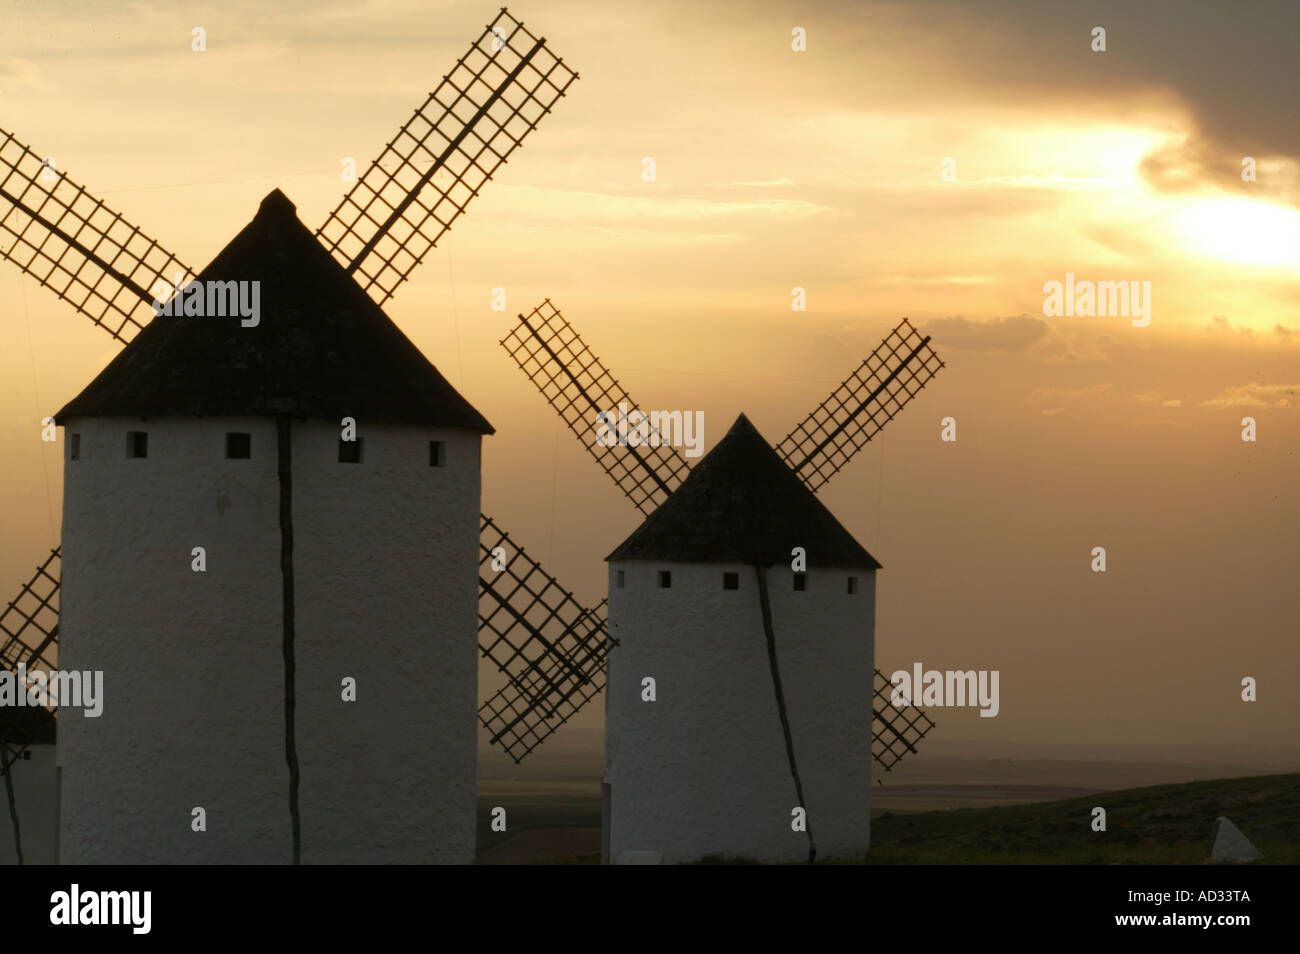 Windmühle, Himmel, Decke, Clud, Bereich, Campo de Criptana, Ciudad Real, Don Quijote, Sancho Panza, Cervantes, La Mancha, Spanien Stockfoto